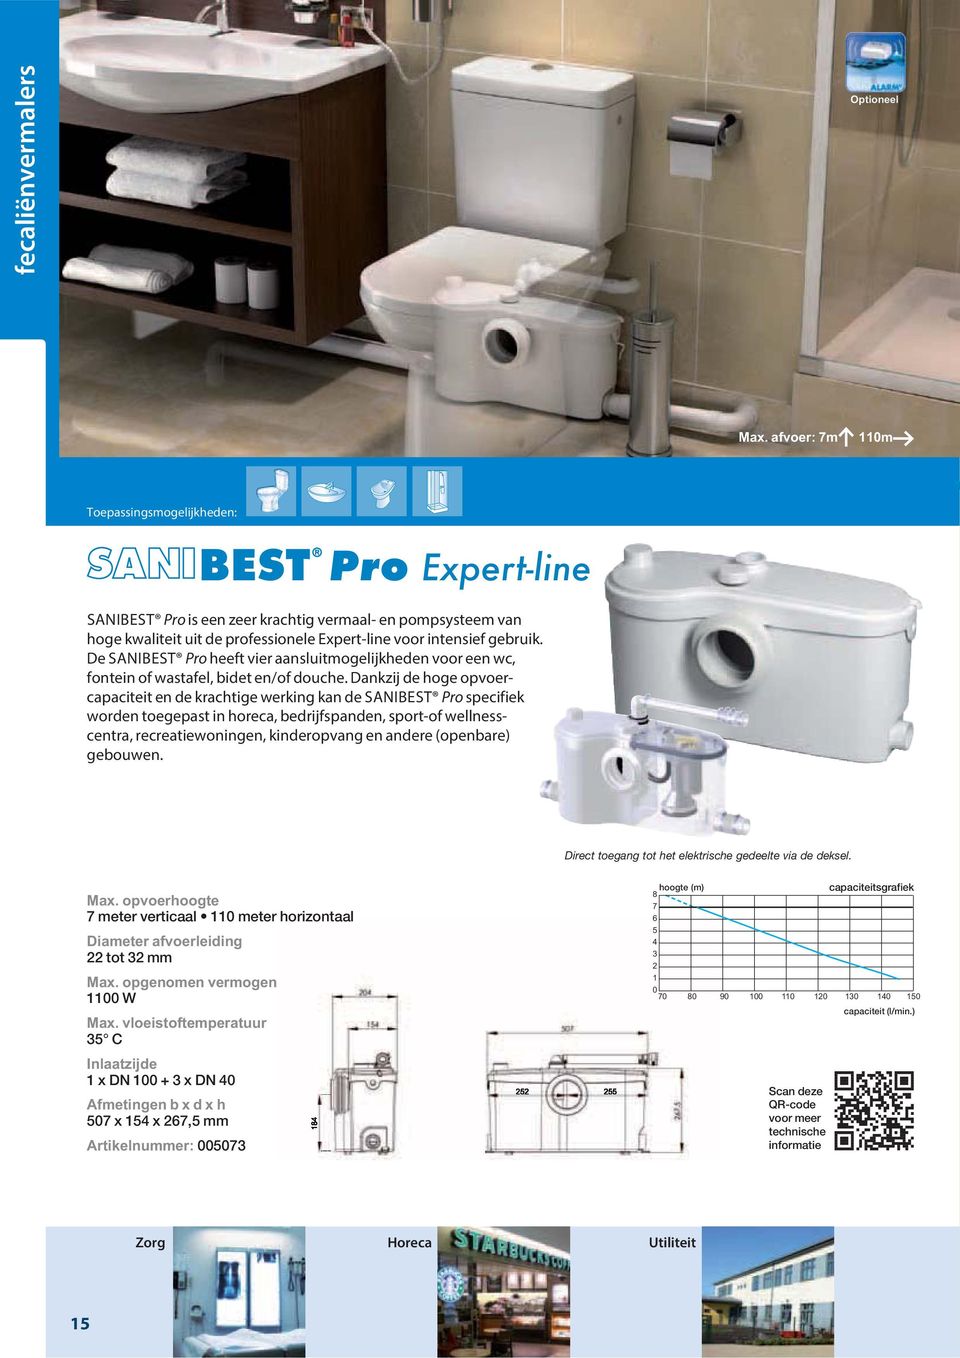 De SANIBEST Pro heeft vier aansluitmogelijkheden voor een wc, fontein of wastafel, bidet en/of douche.